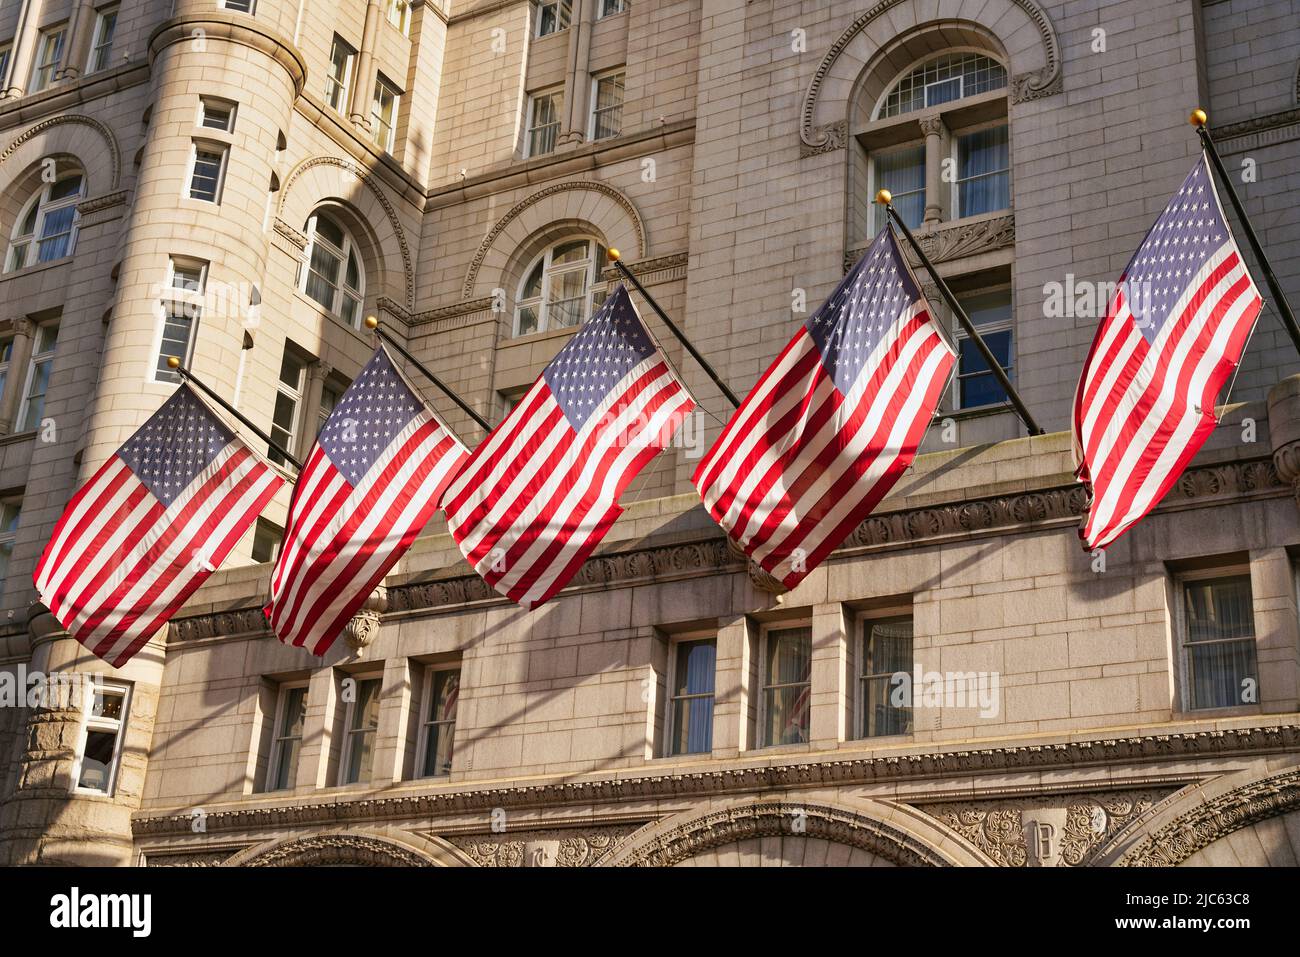 US-Flaggen auf dem alten Postgebäude in Washington, D.C., USA. US-amerikanische Flaggen mit Sternen und Streifen im Sonnenlicht. Stockfoto